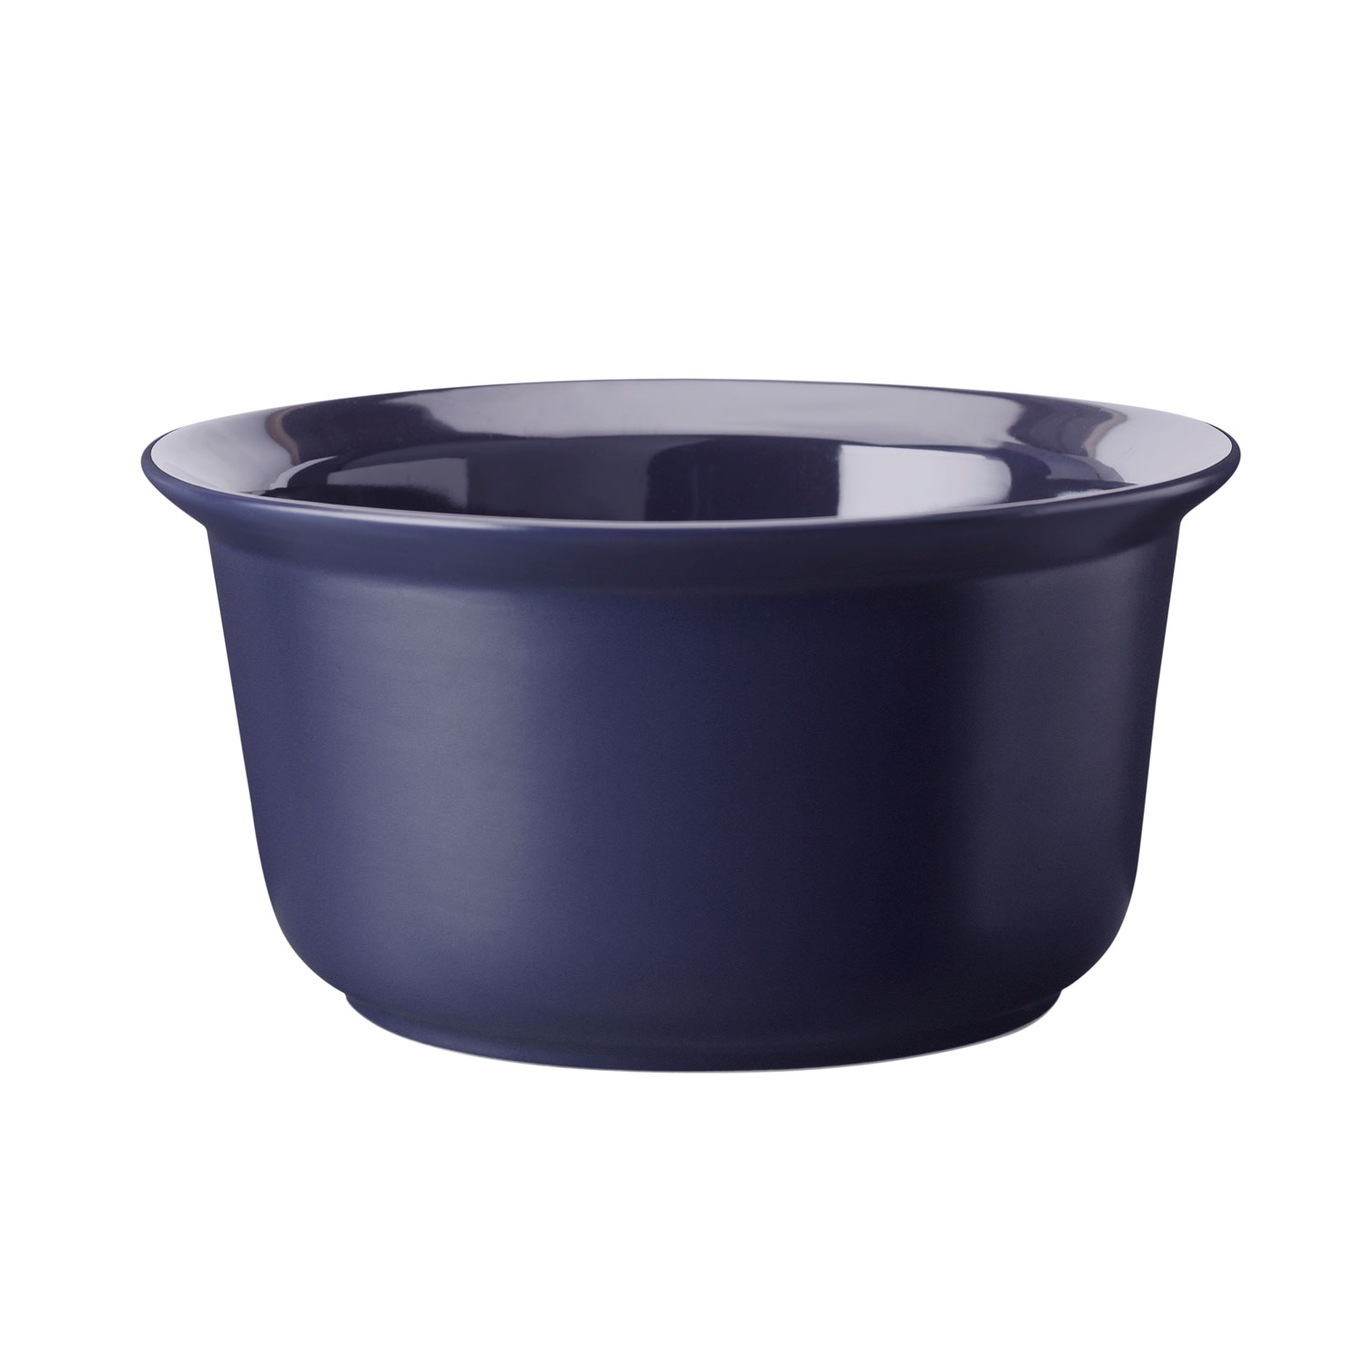 https://royaldesign.com/image/2/rig-tig-by-stelton-cook-serve-ovenproof-bowl-blue-4?w=800&quality=80